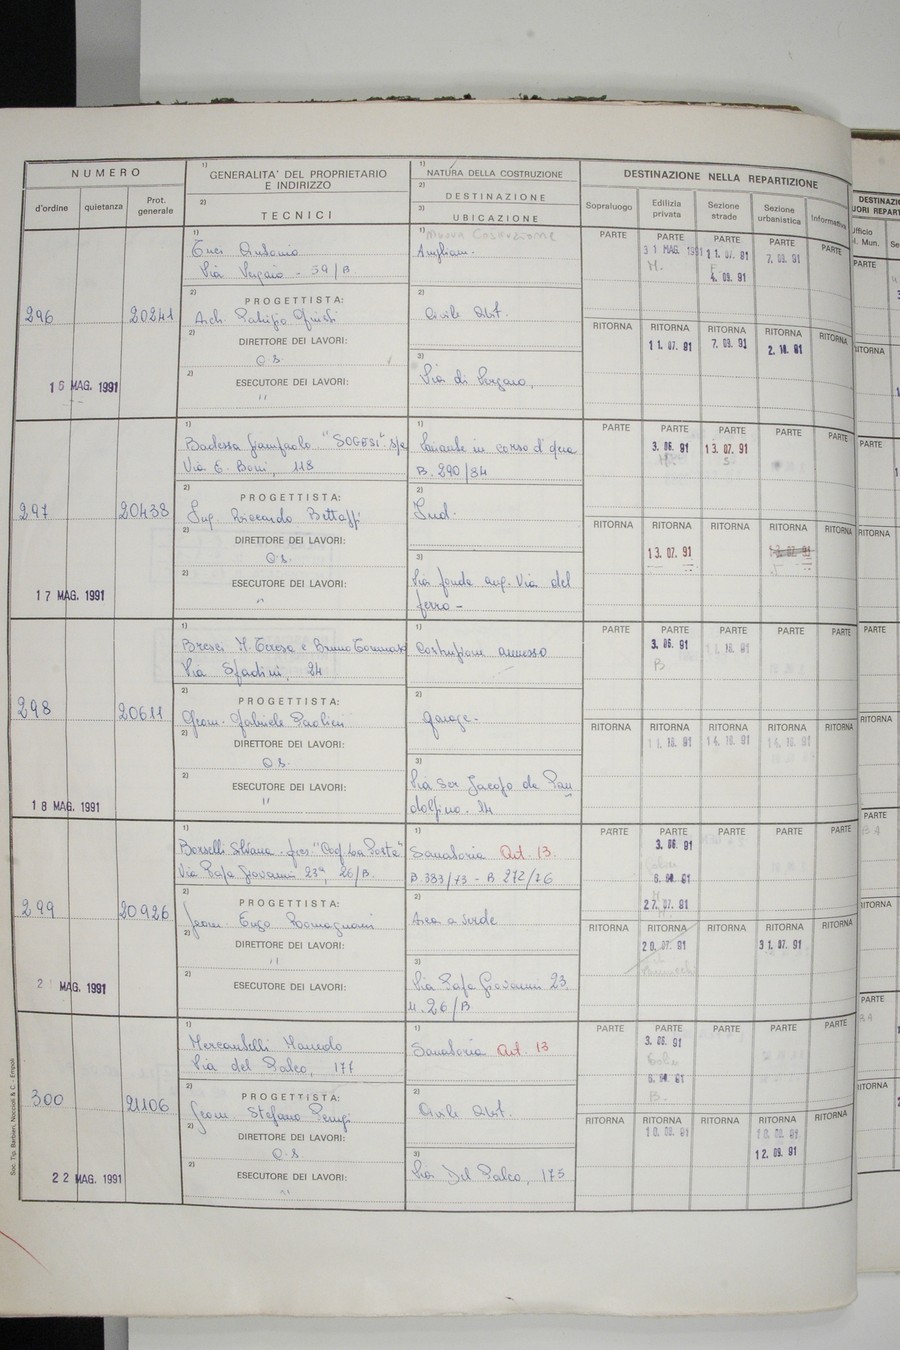 Foto del lato sinistro del registro con i dati della pratica 298/1991